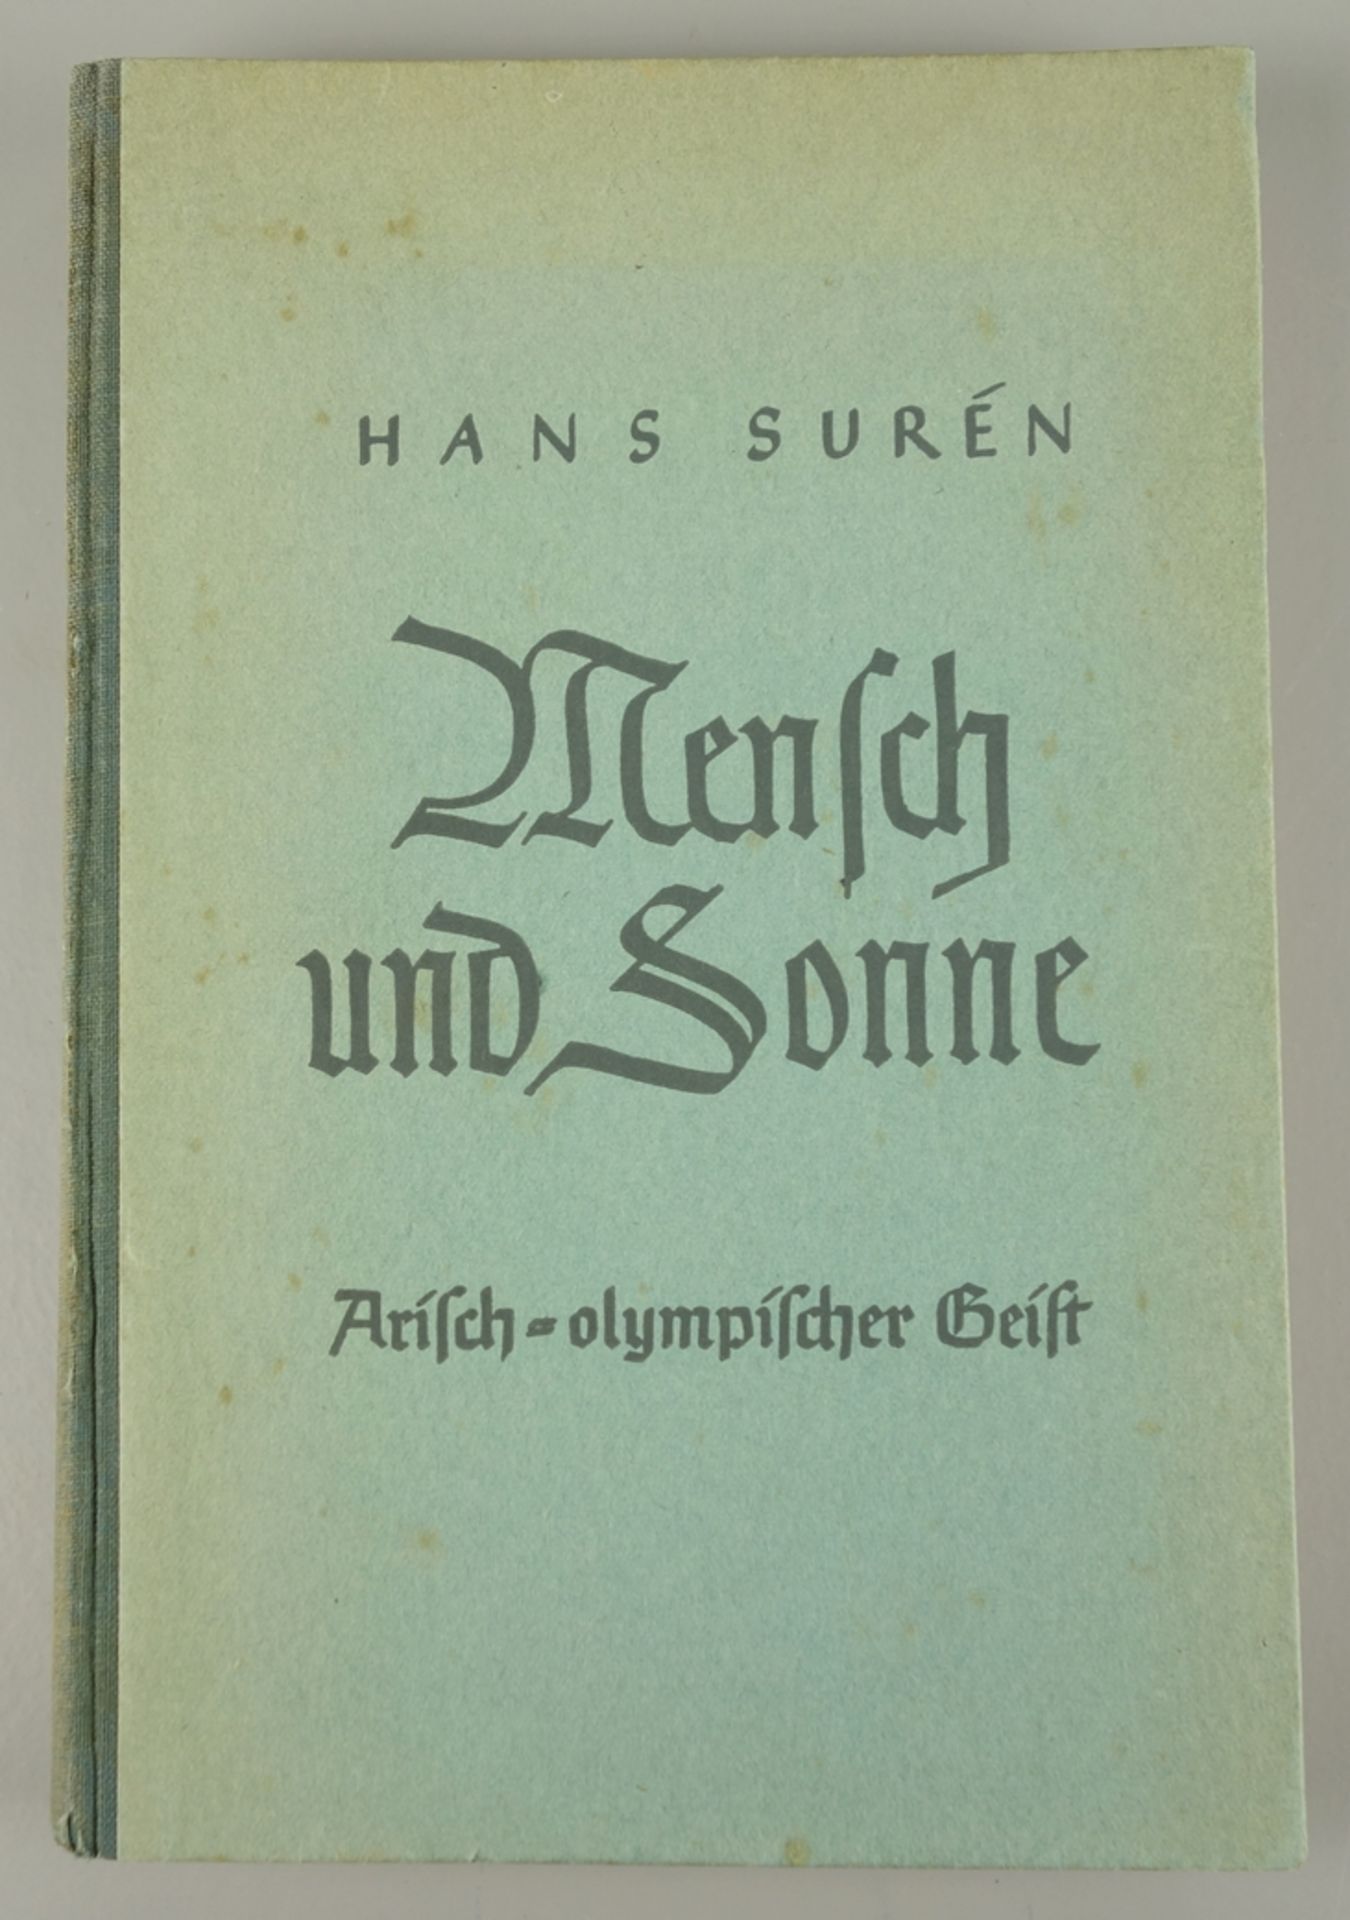 Mensch und Sonne, Arisch-olympischer Geist, Hans Surén, 1936